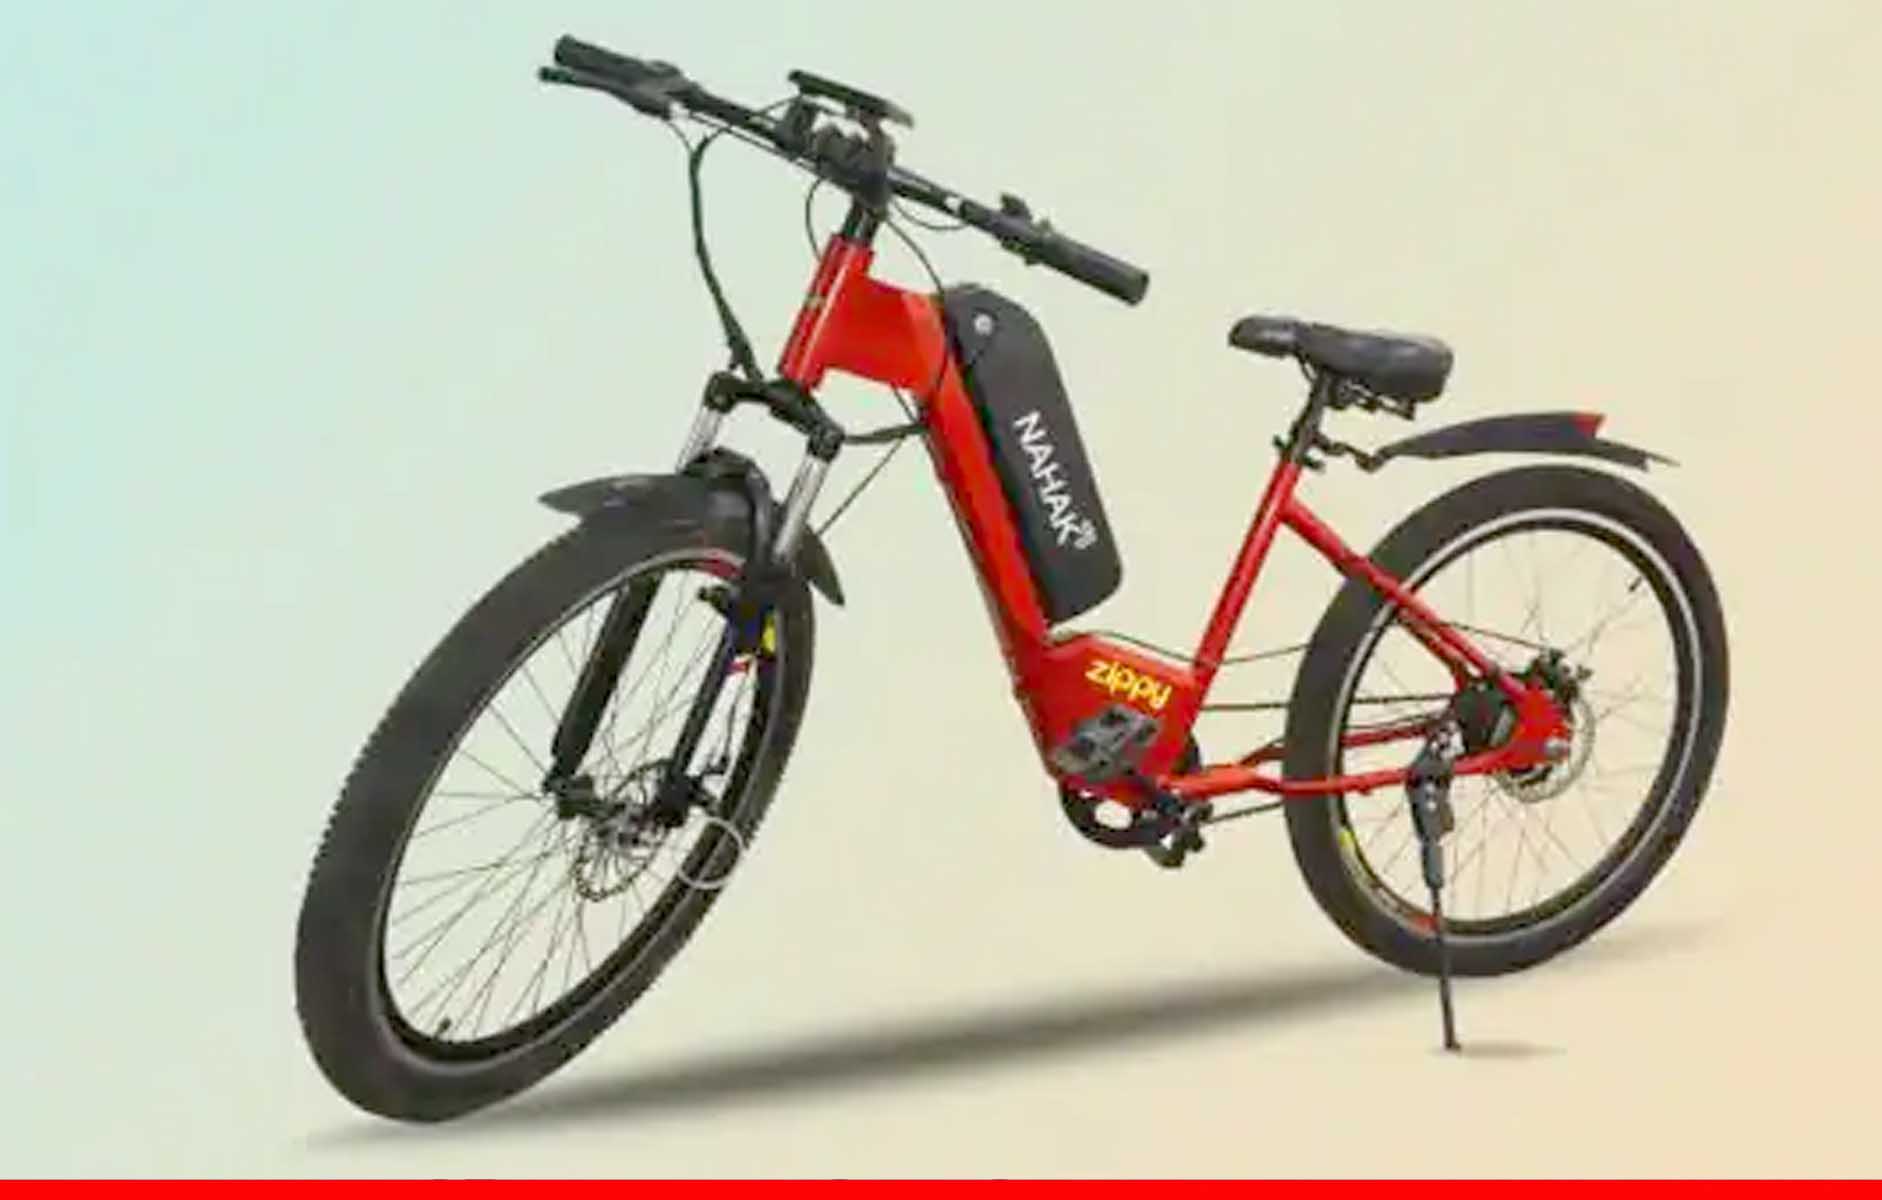 शुरू हुई पावरफुल इलेक्ट्रिक साइकिलों की बुकिंग, महज 2,999 रुपये में करें बुक 